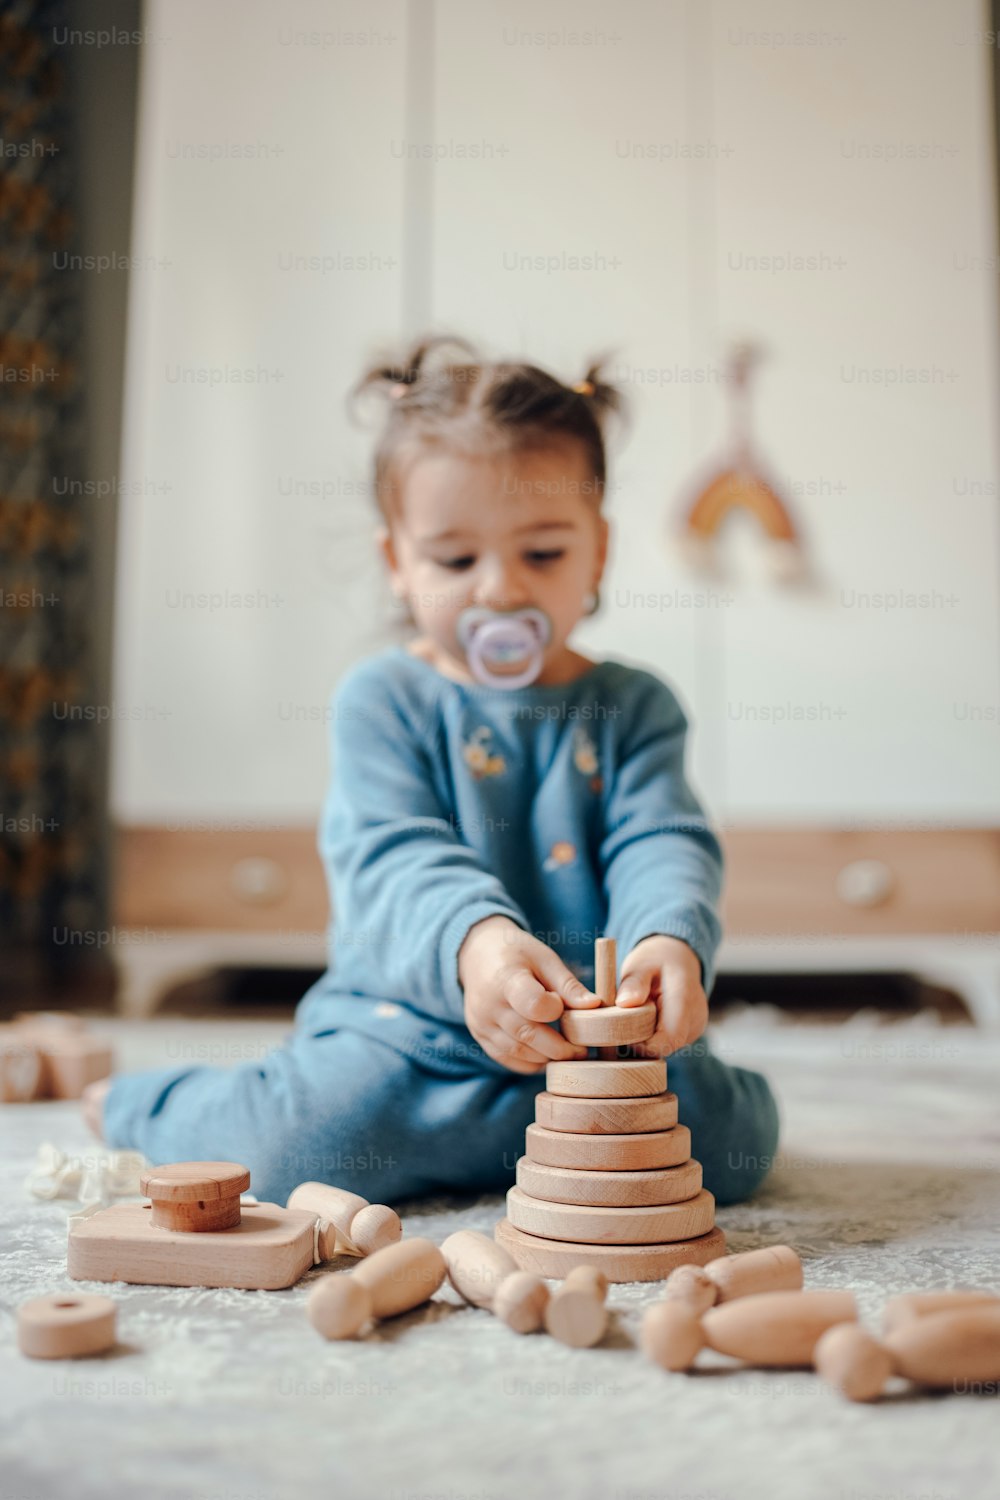 Un bébé jouant avec une pile de blocs de bois